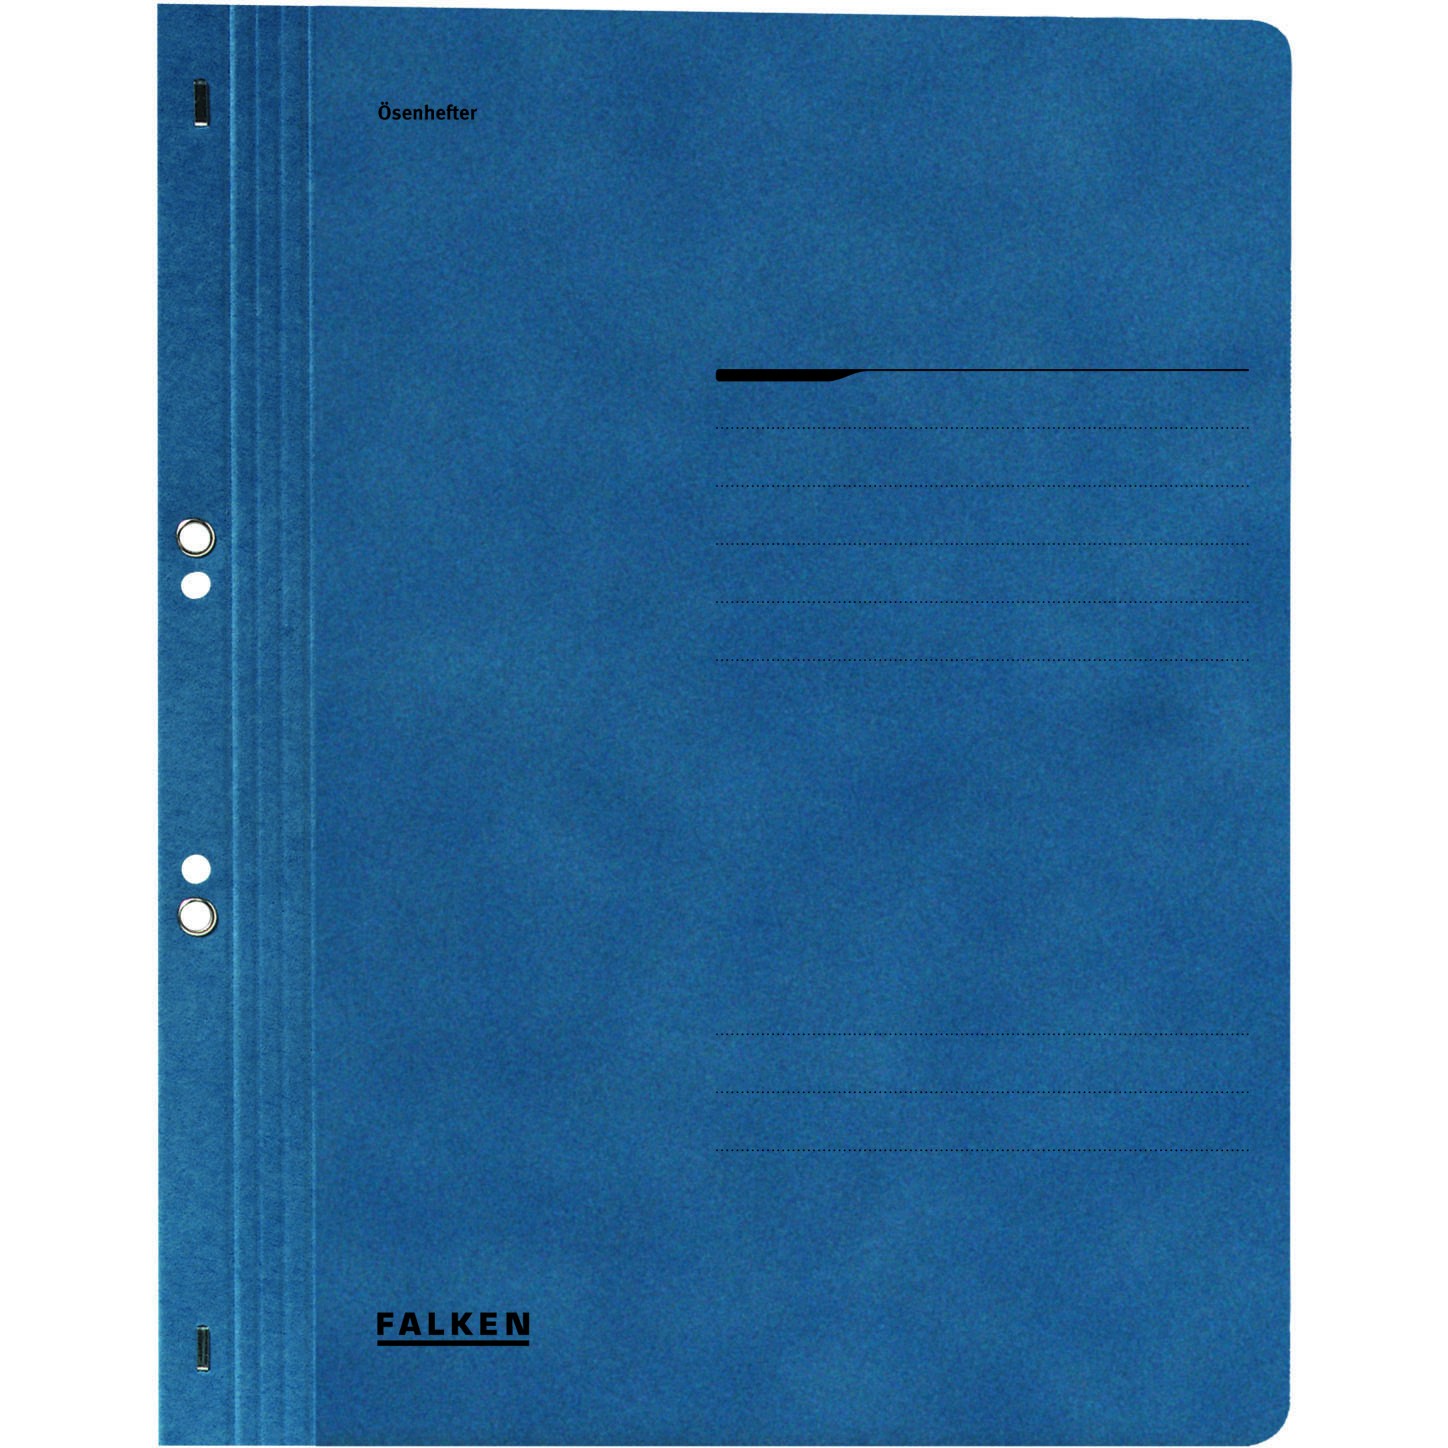 Dosar cu gauri 1/1 Falken Lux, carton, 250 g/mp, albastru